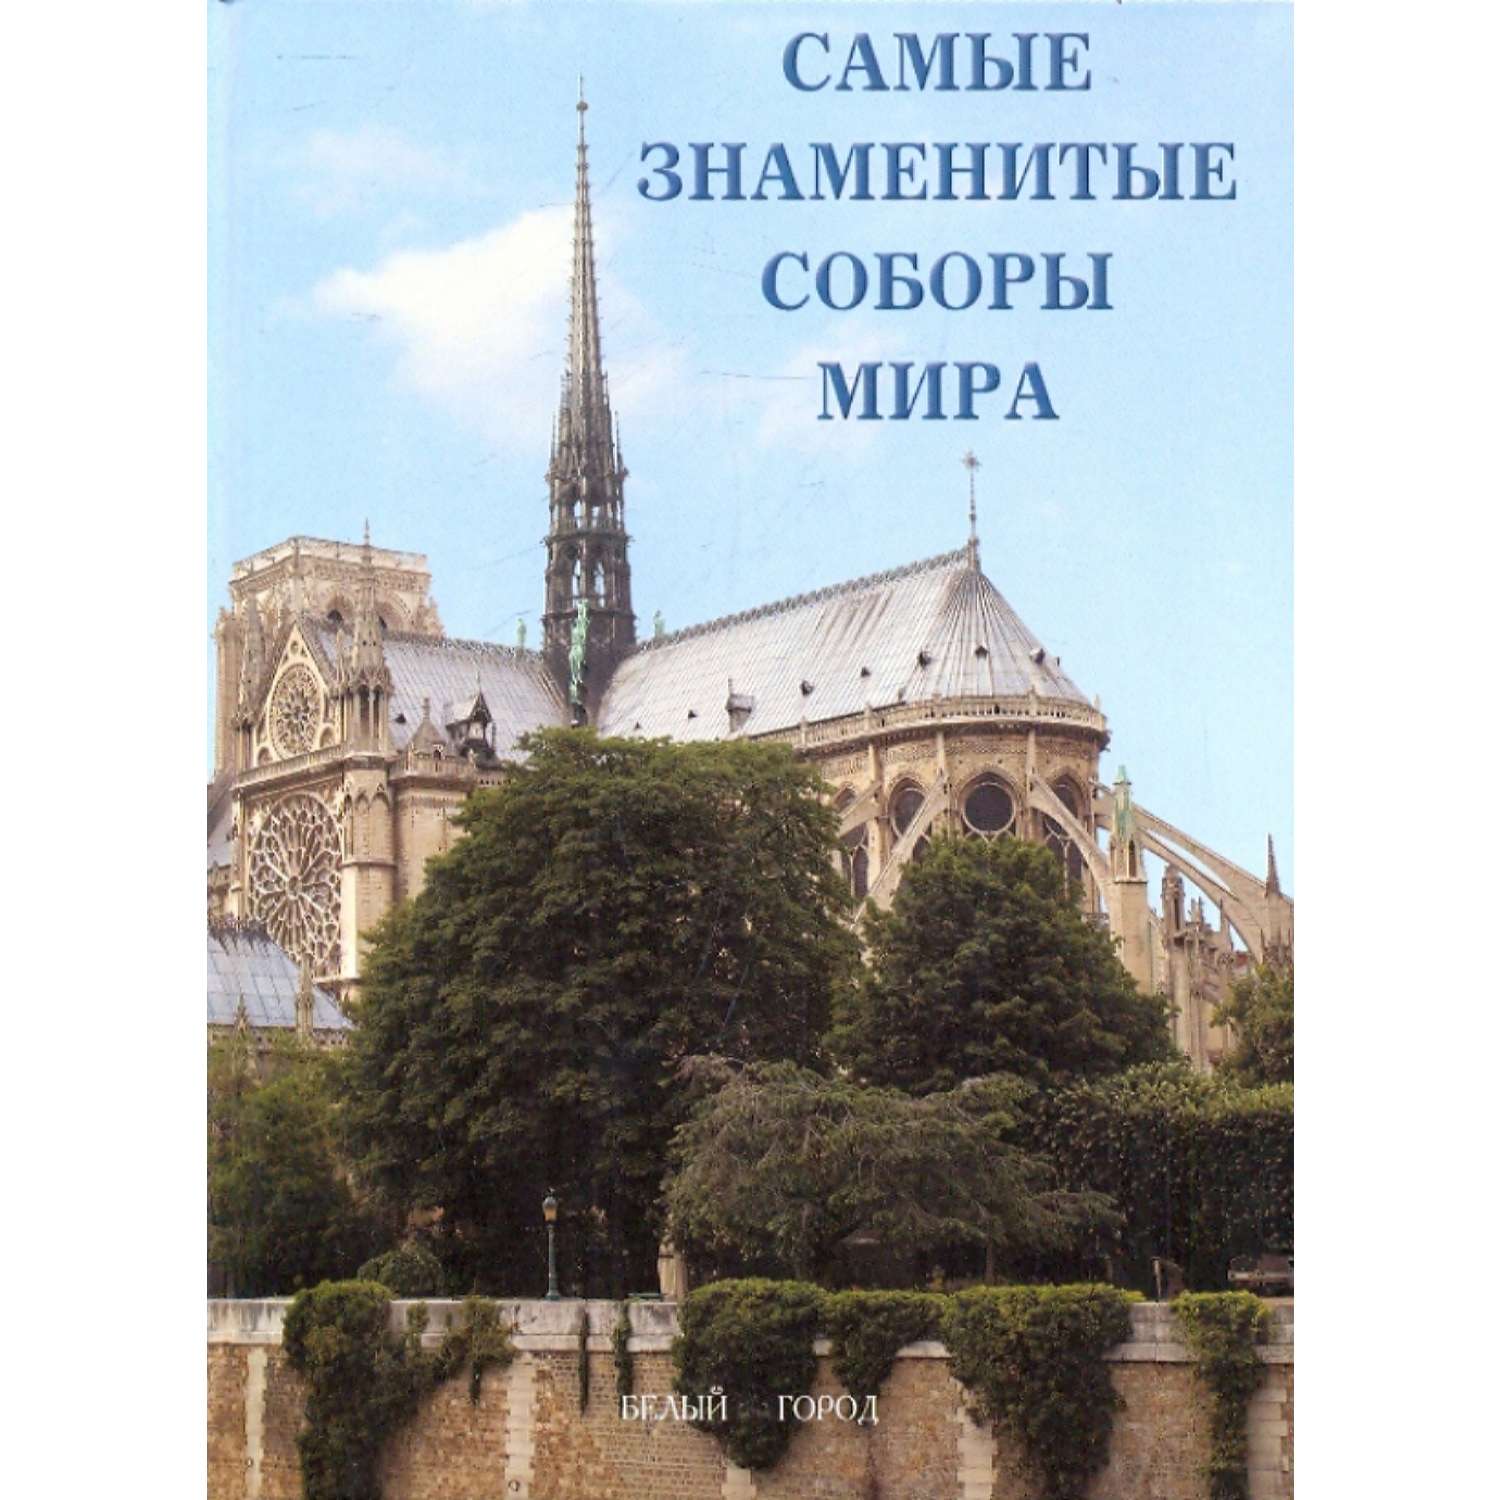 Книга Белый город Самые знаменитые соборы мира - фото 1